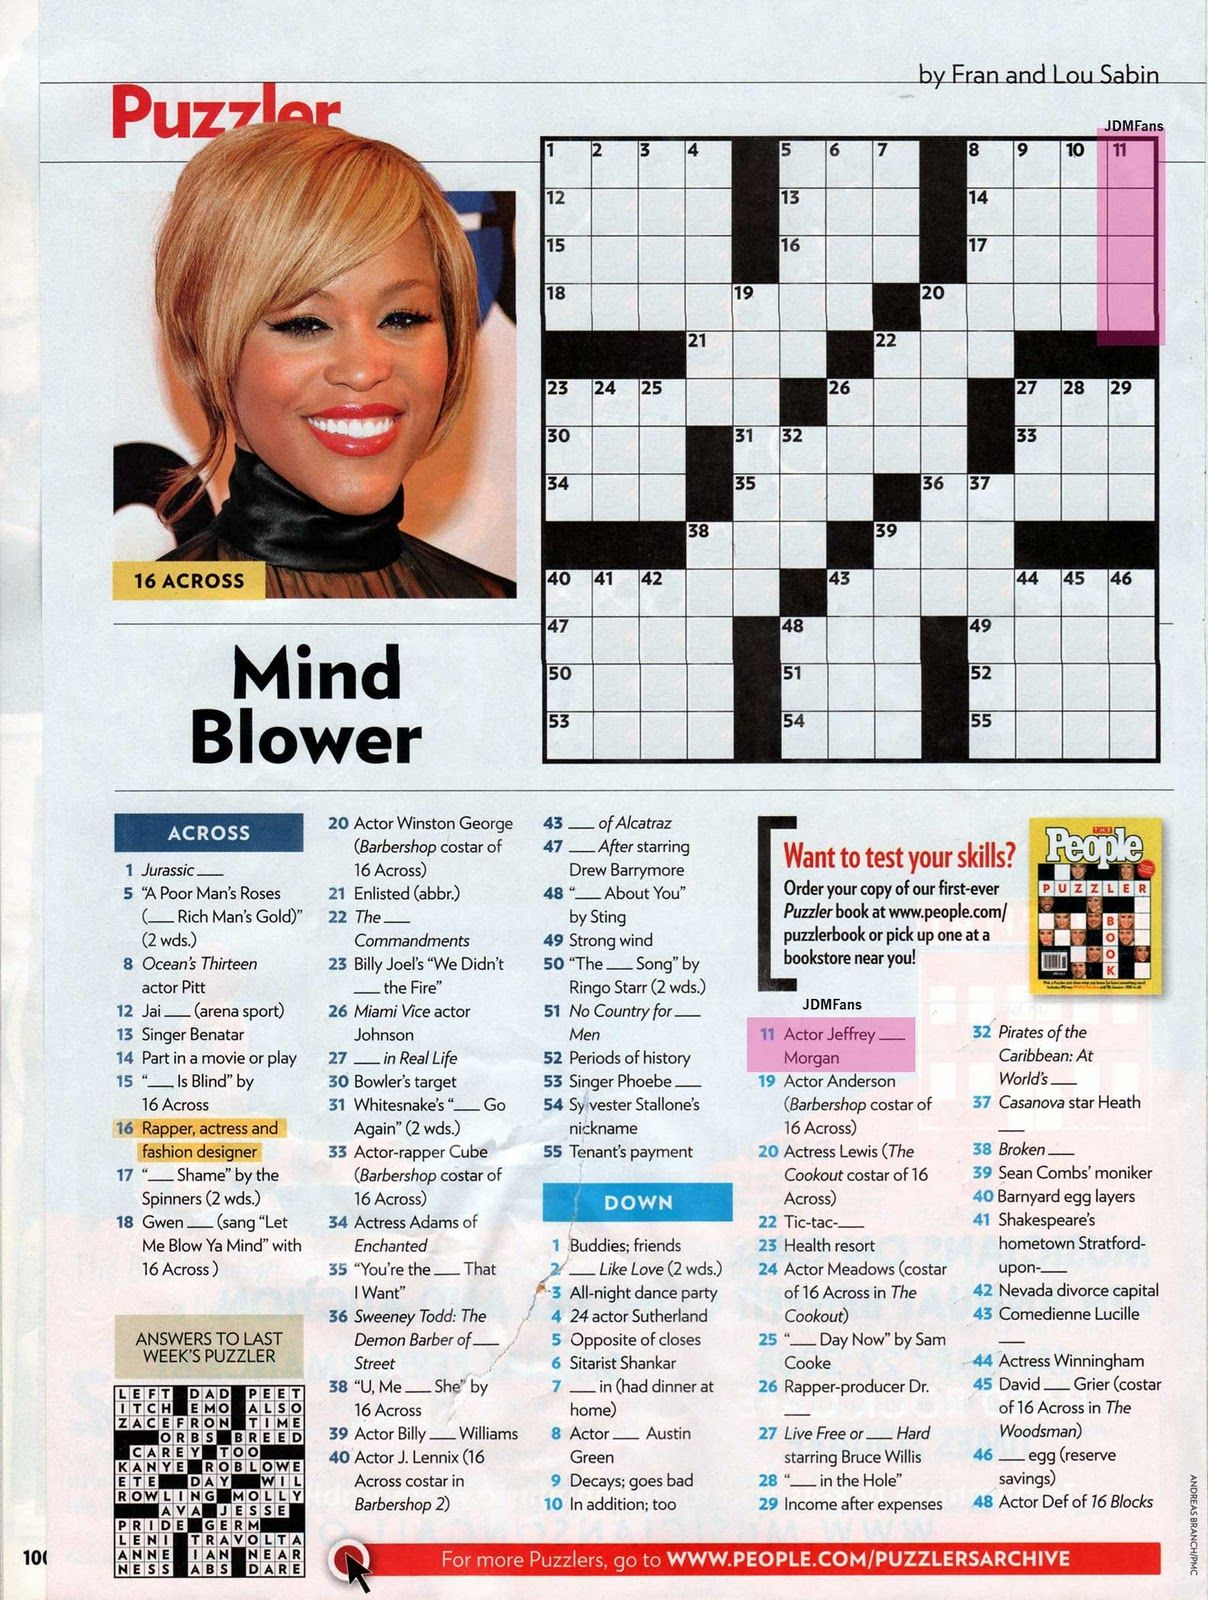 People Magazine Crossword Puzzles To Print | Puzzles In 2019 - Star Magazine Crossword Puzzles Printable